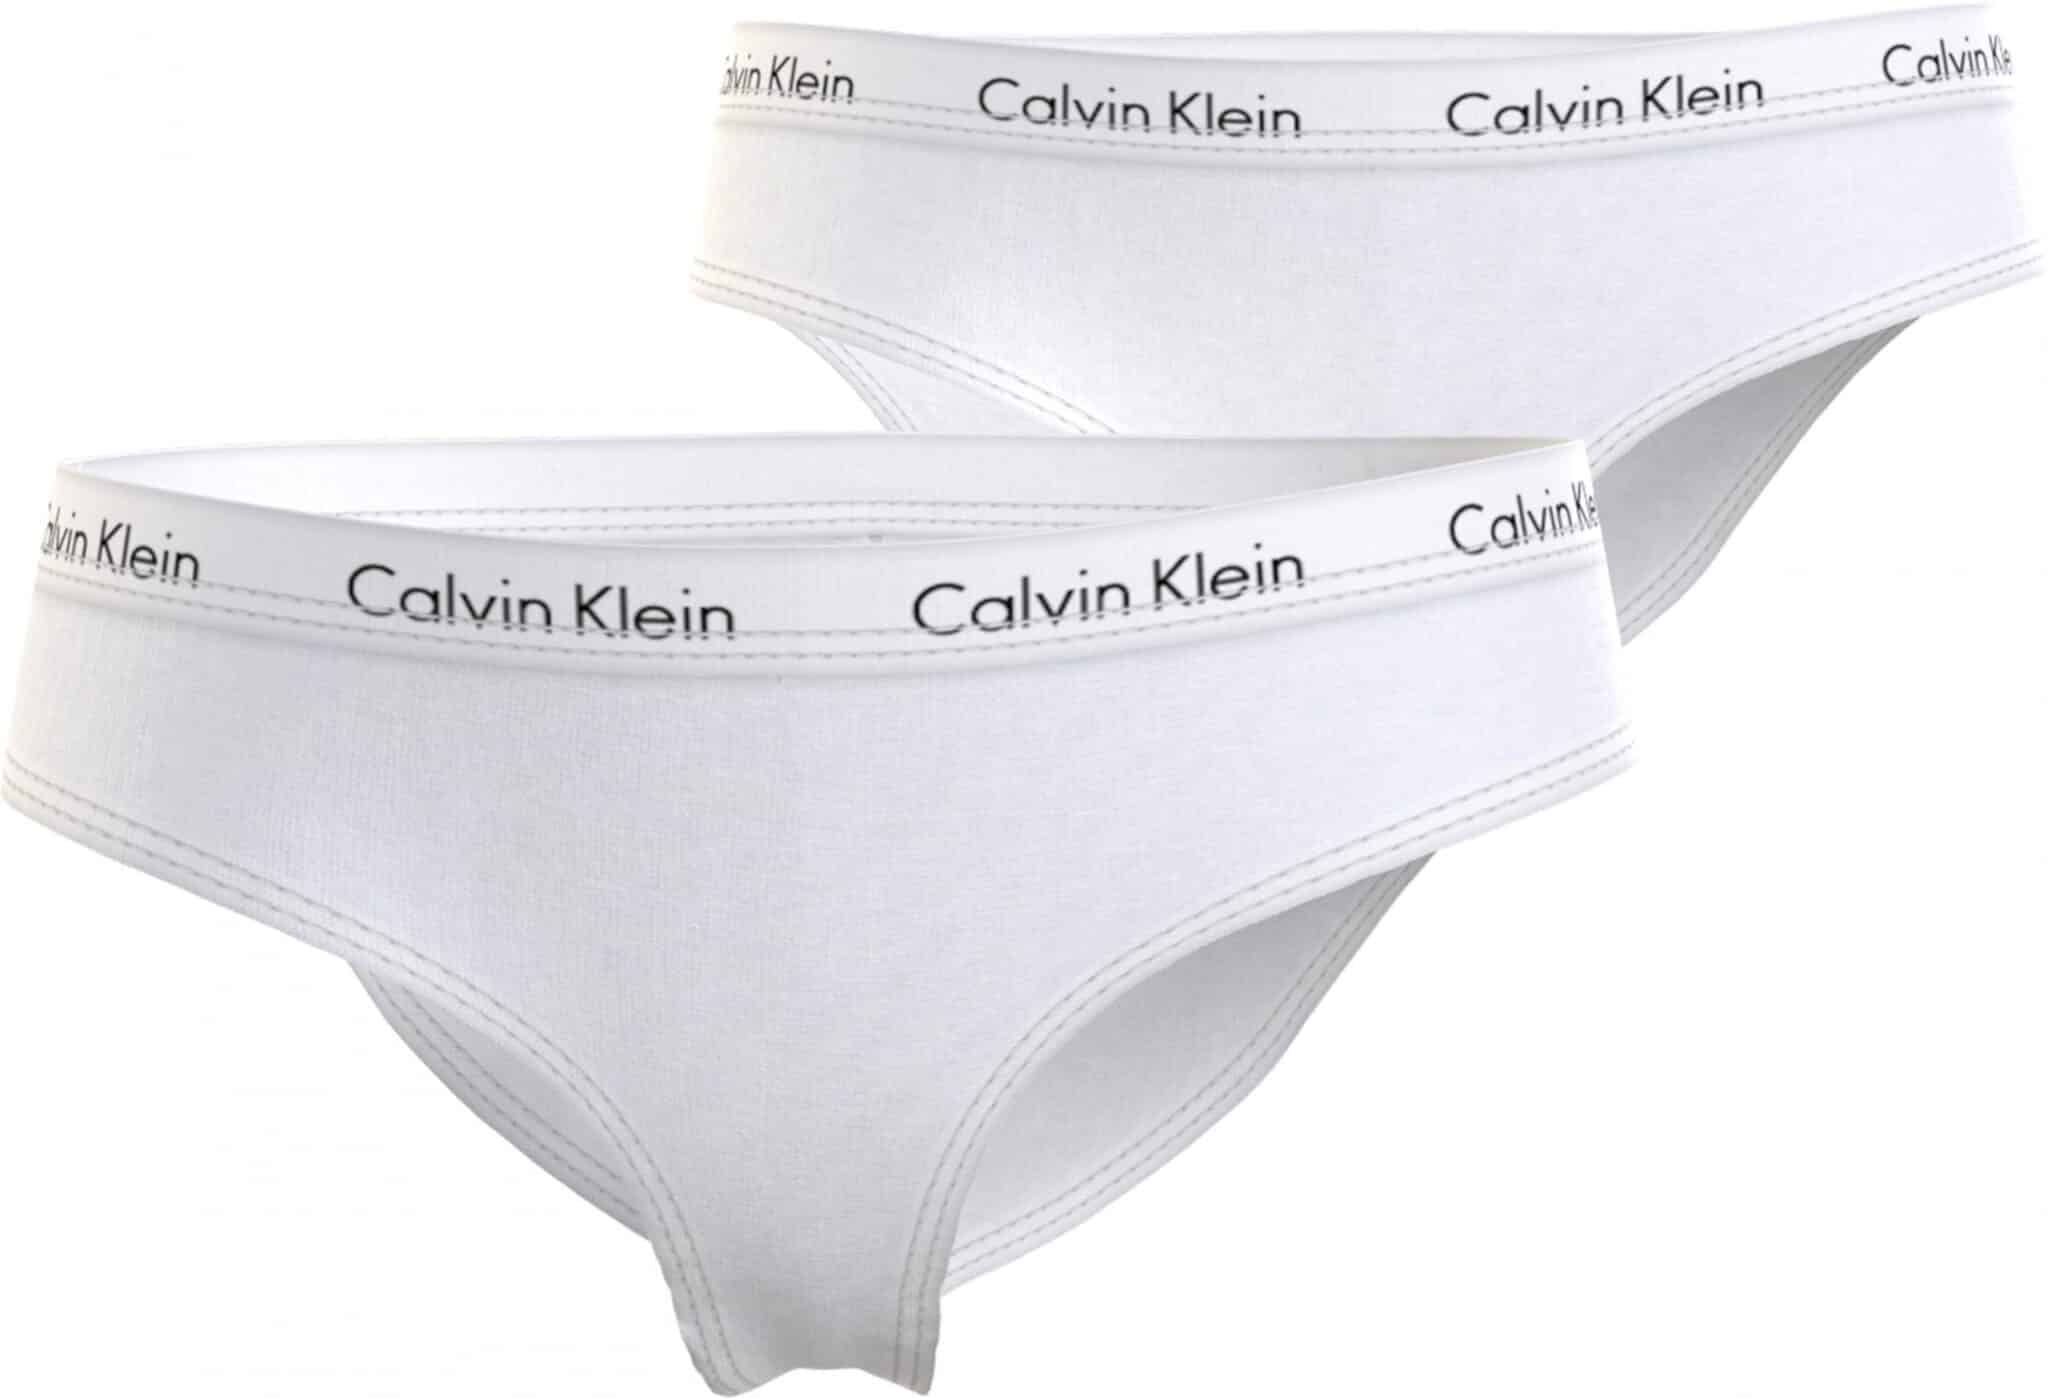 Calvin Klein Kids' Girls Black & White Cotton Knickers (2 Pack